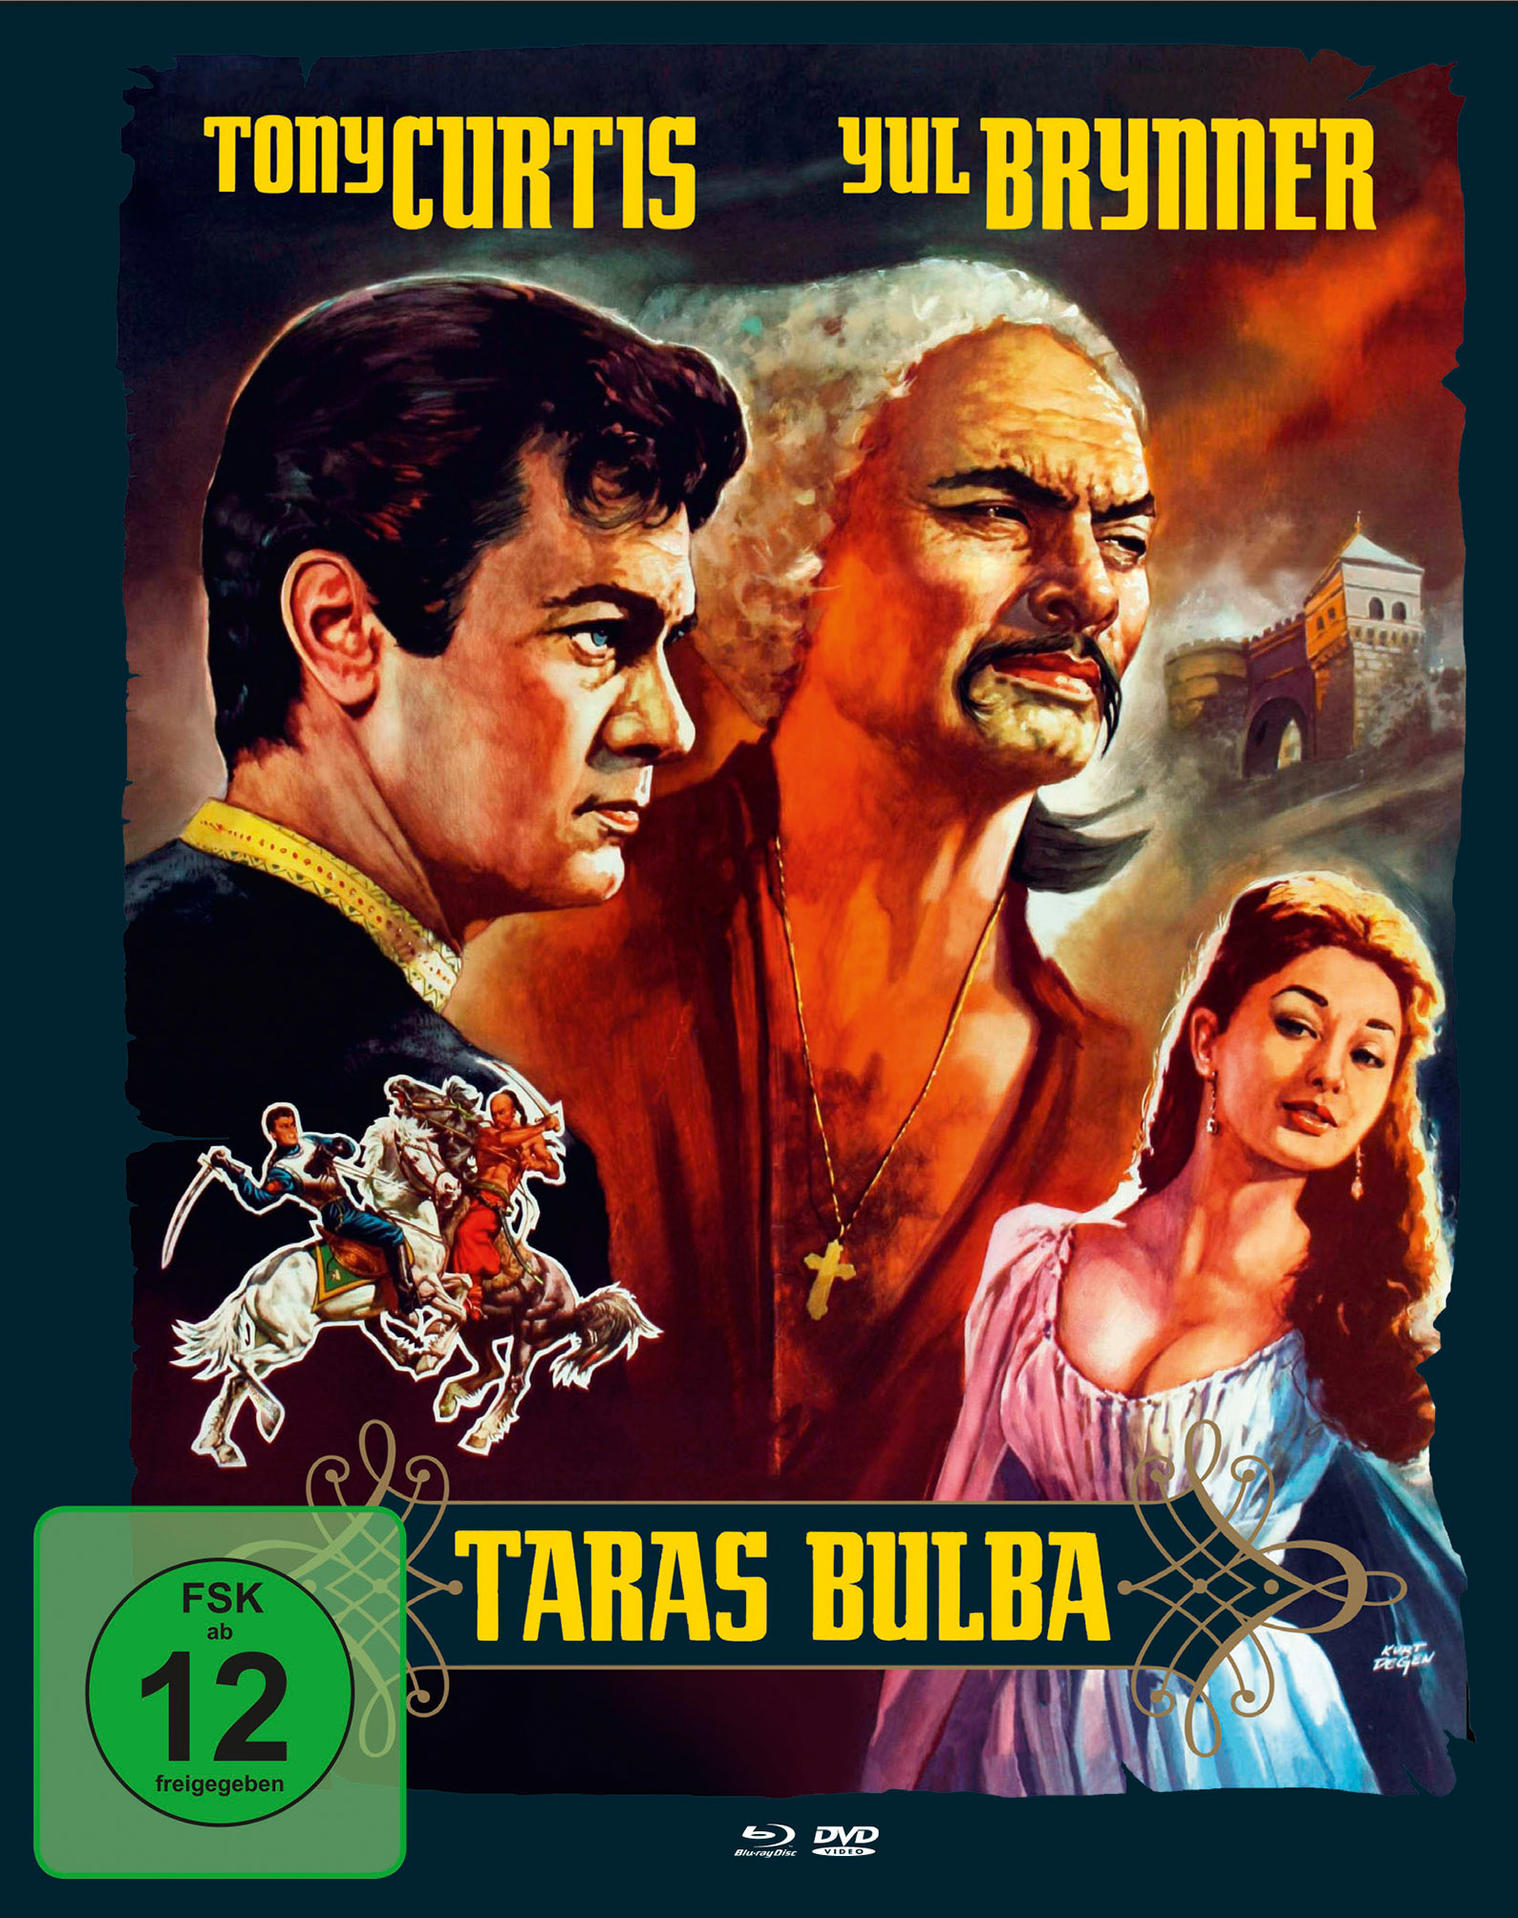 DVD Blu-ray Bulba Taras +